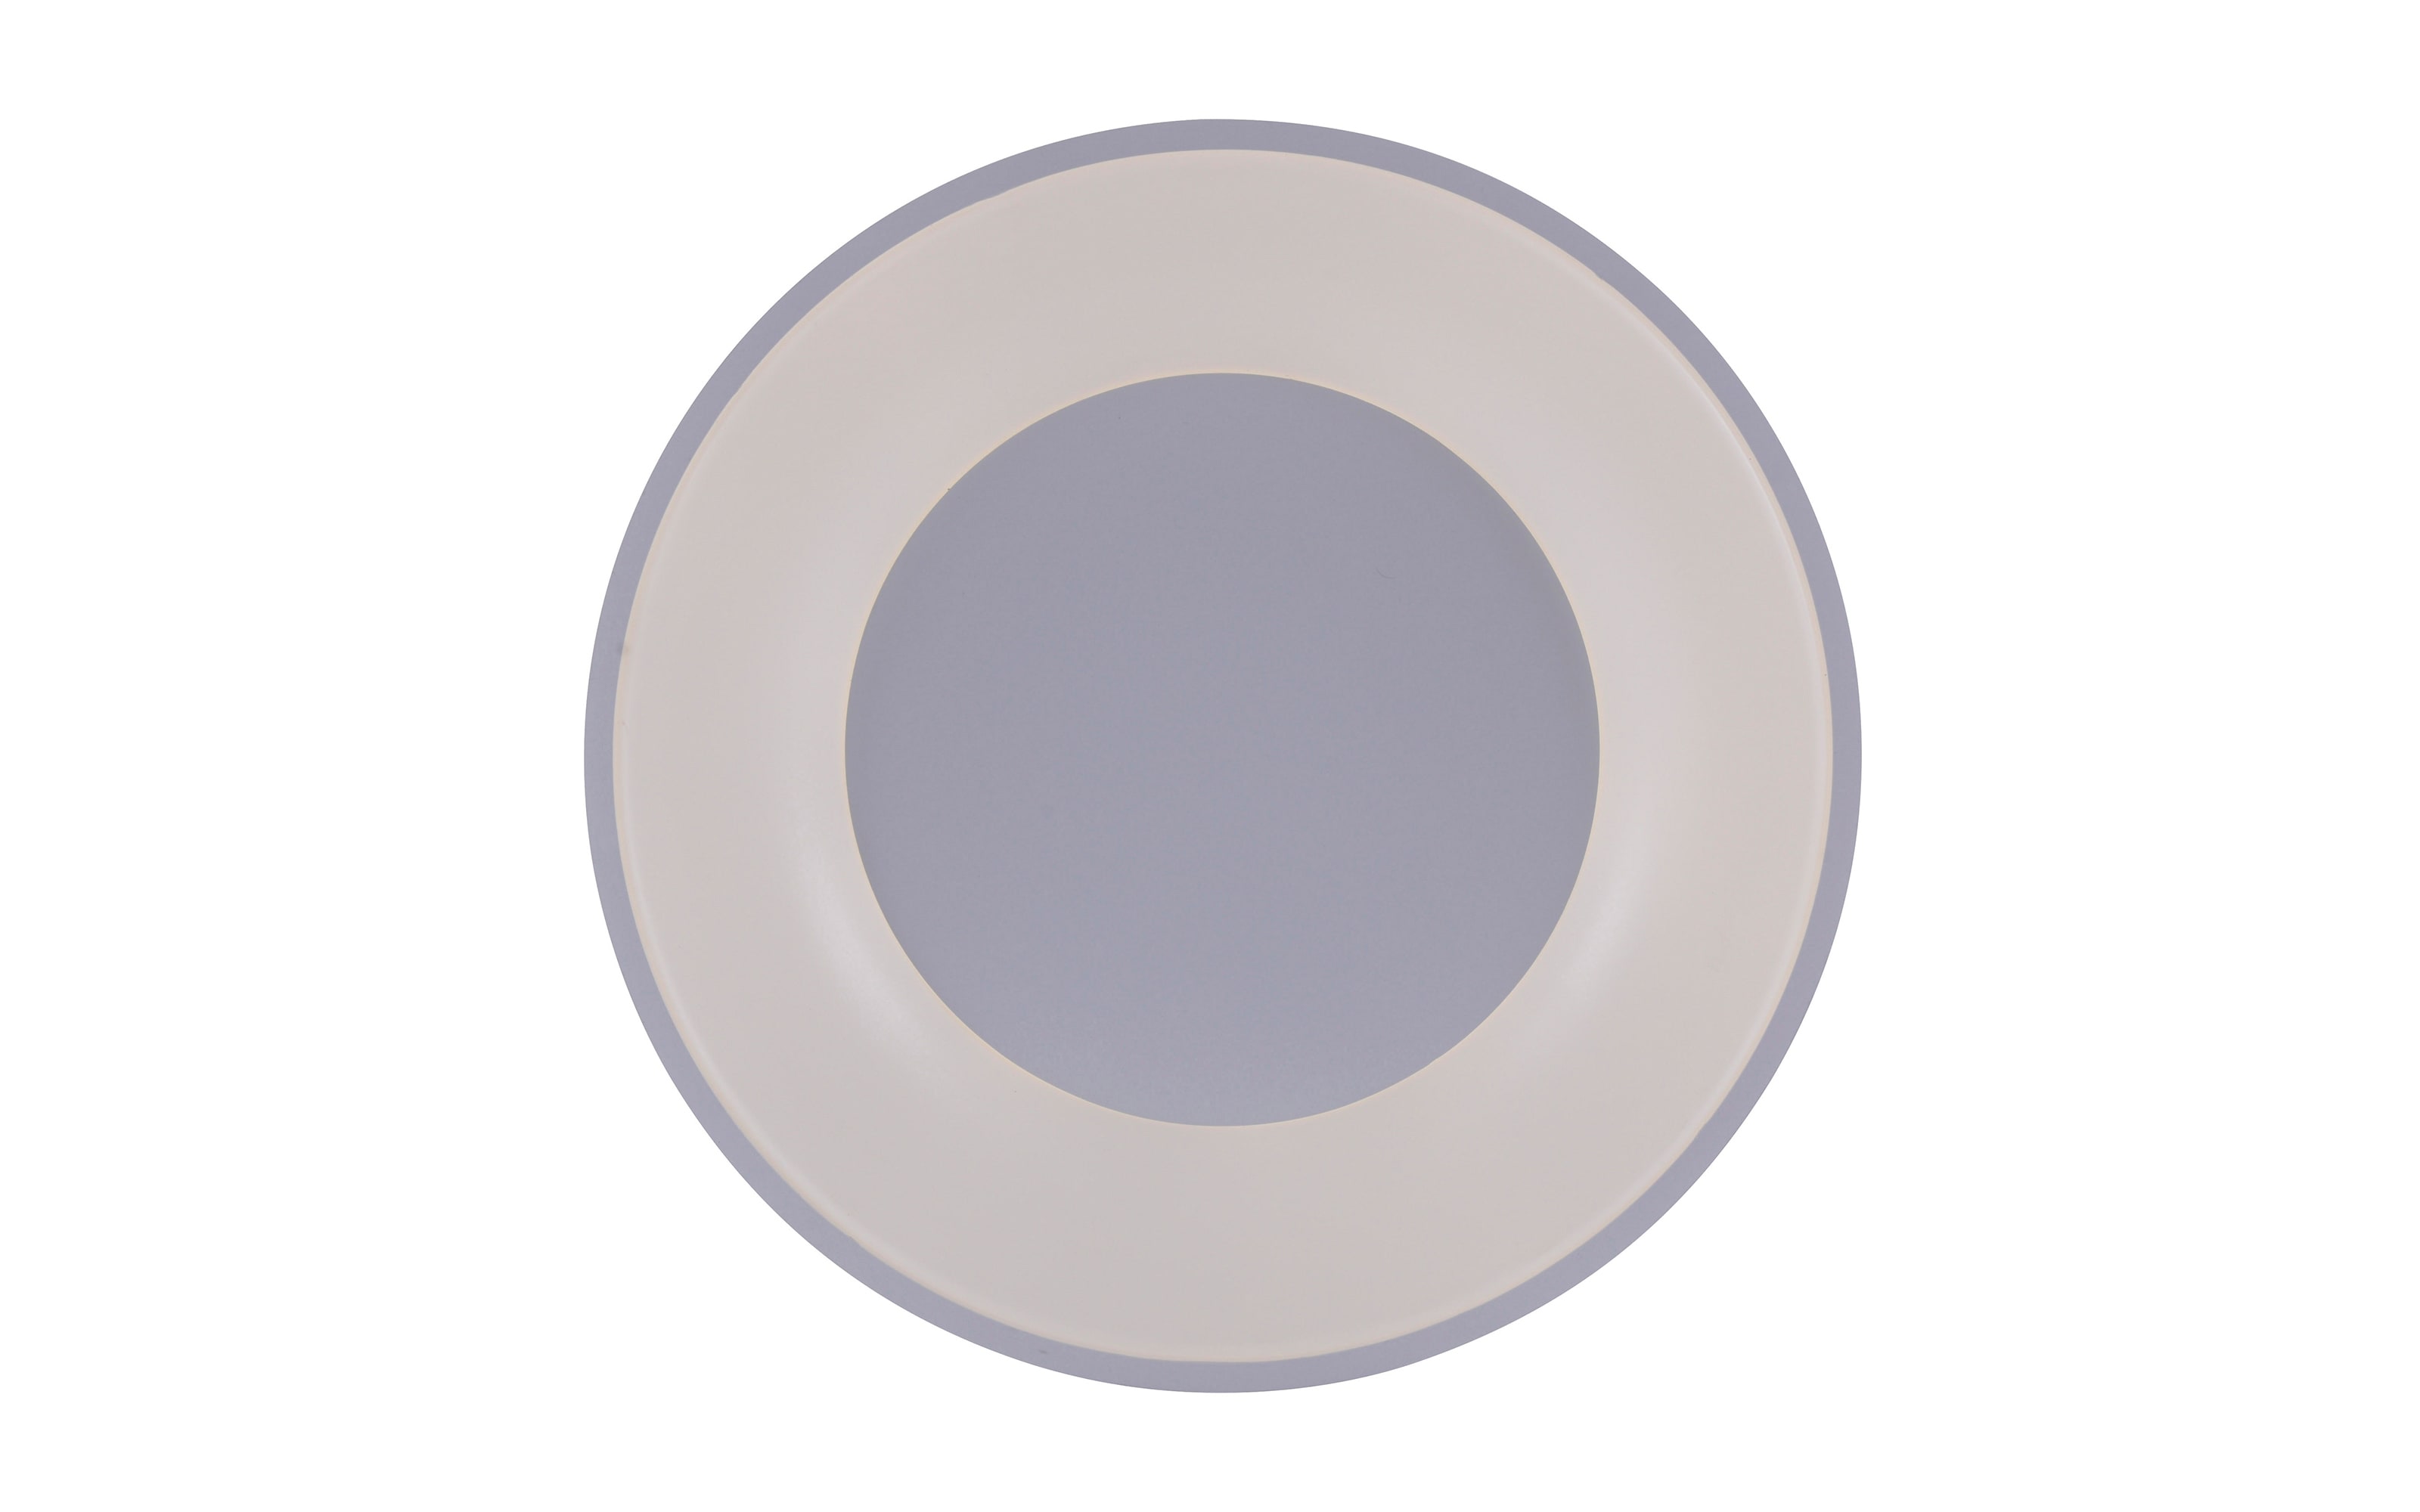 LED-Deckenleuchte Anika, weiß, 48 cm